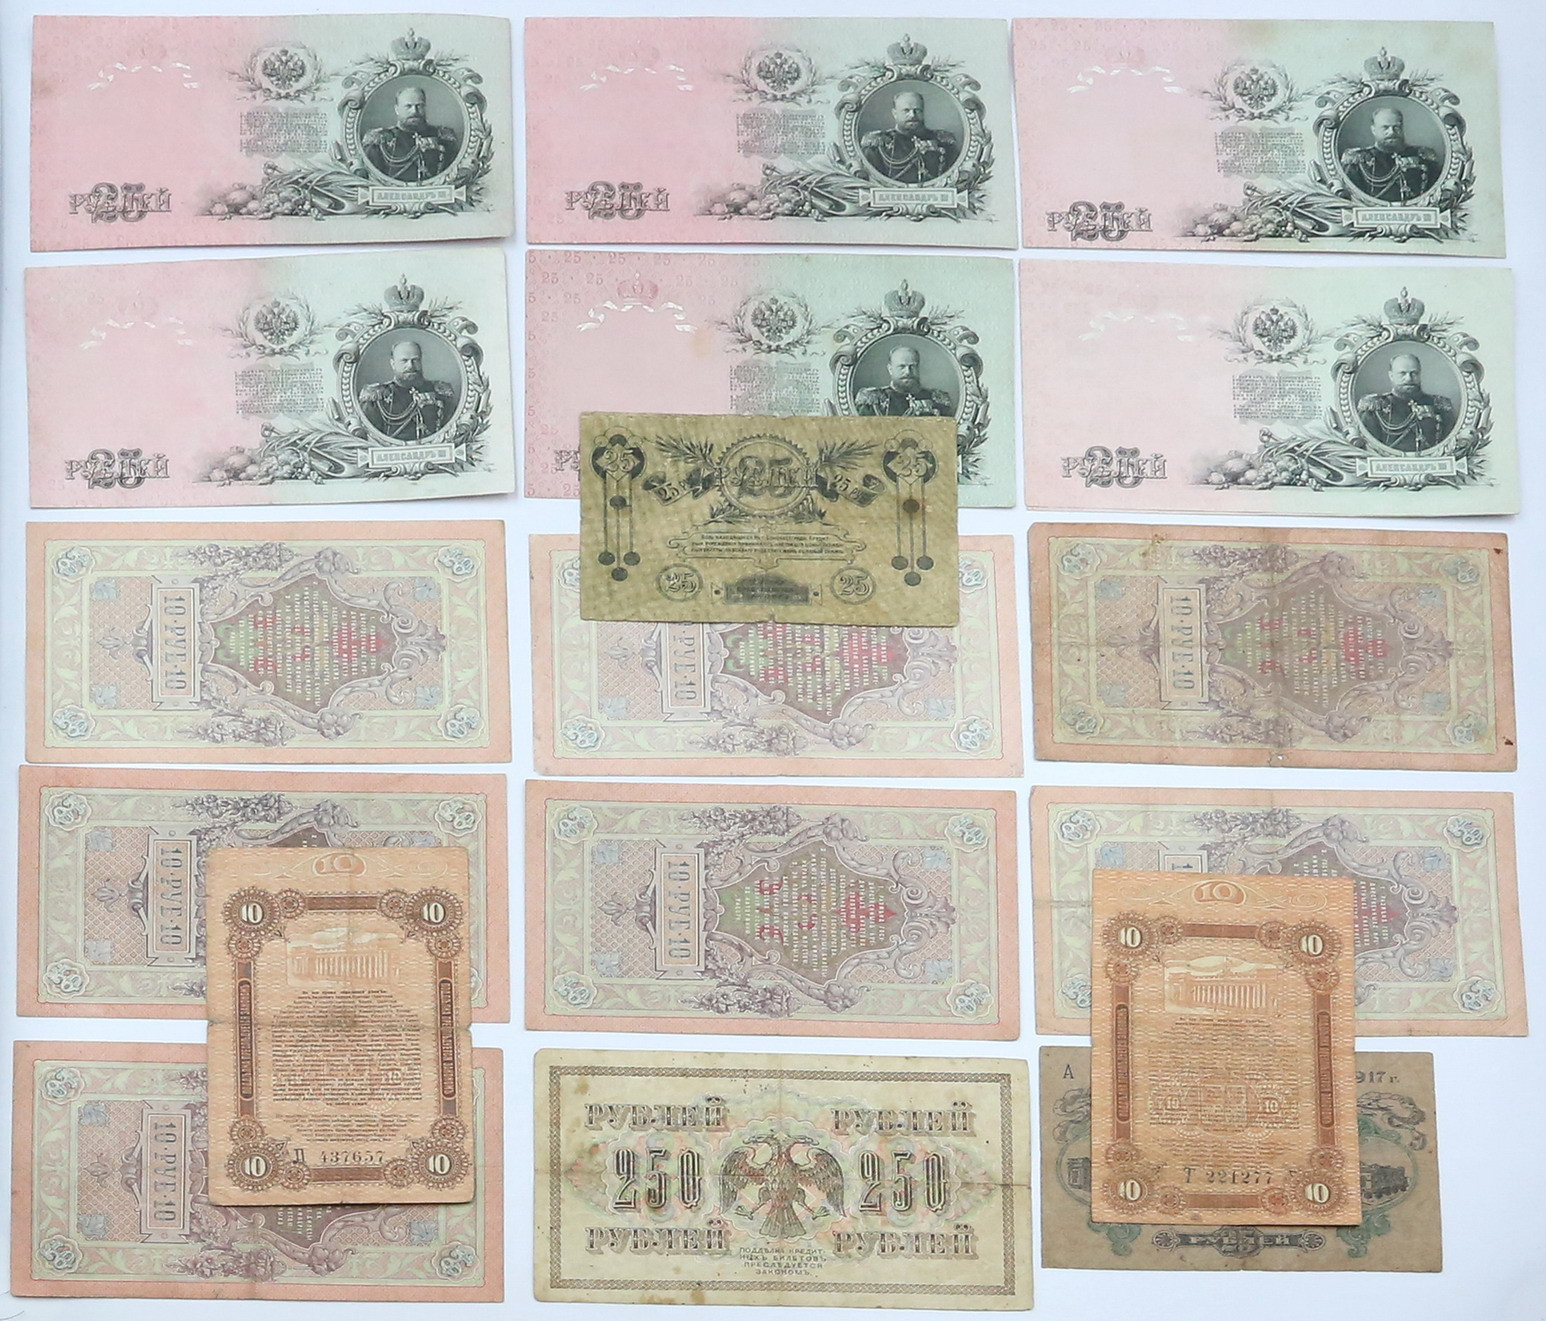 Rosja, Ukraina - Odessa 10 - 250 rubli, zestaw 19 banknotów